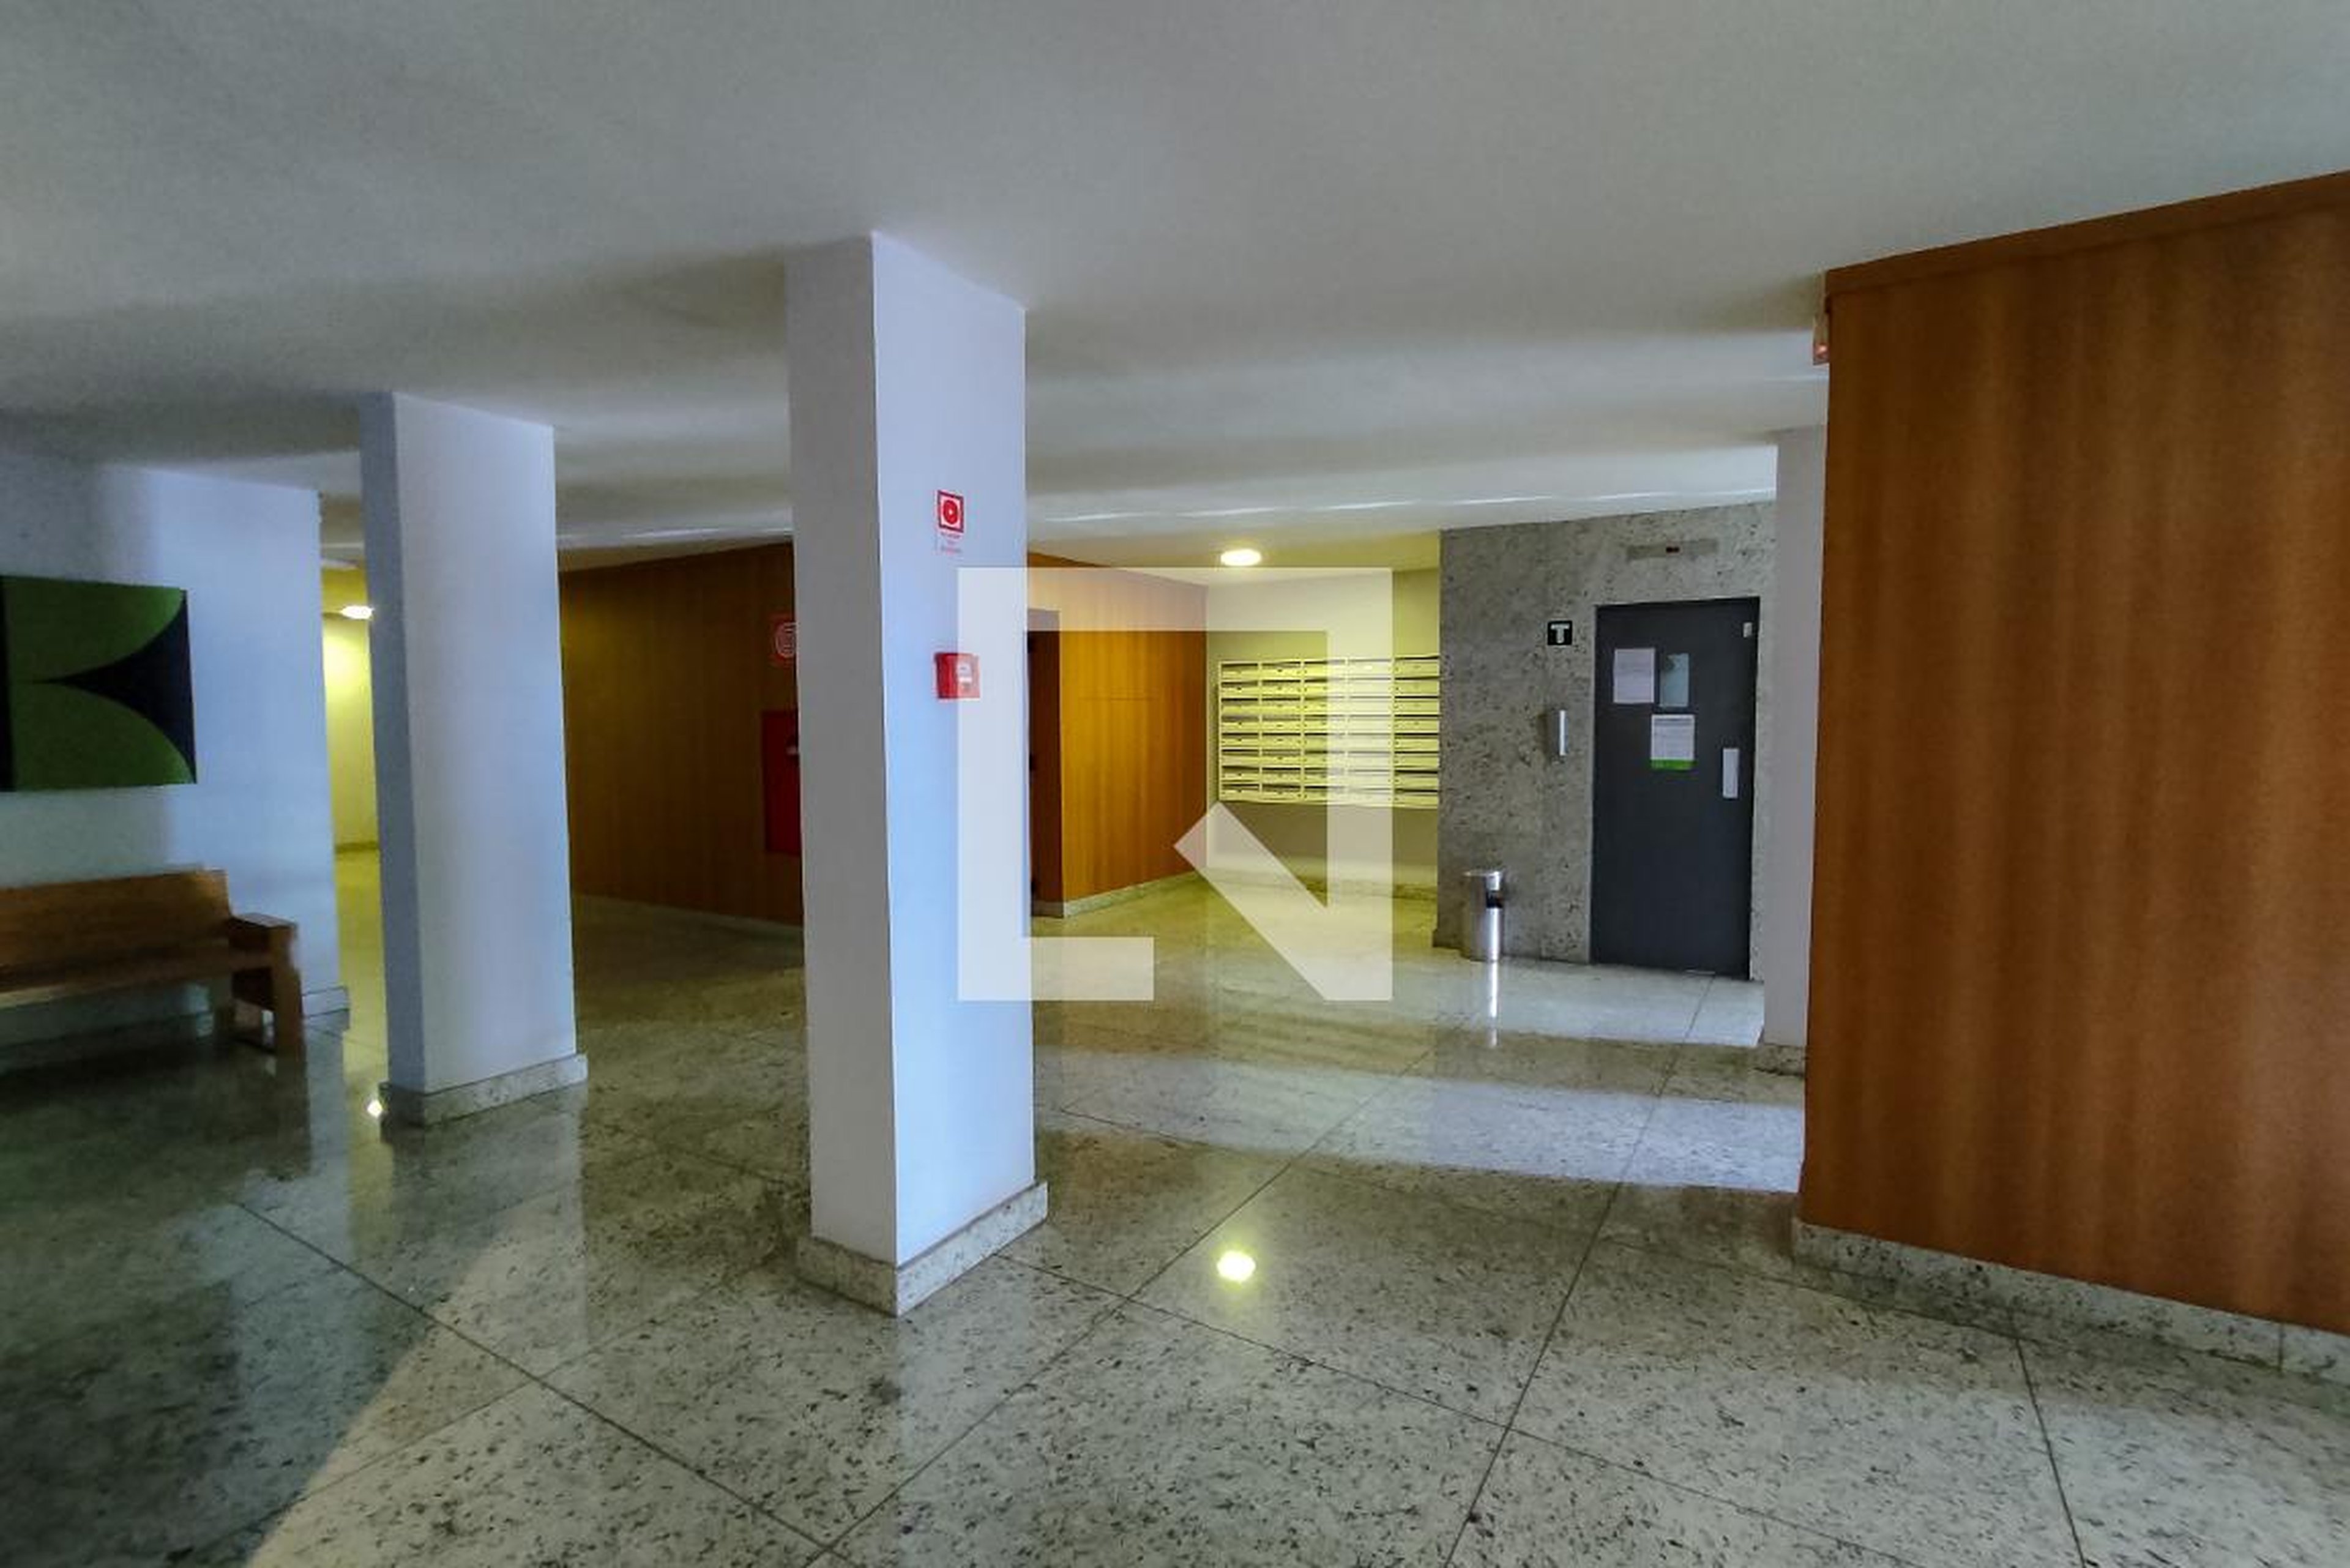 Hall de entrada - Edifício Itapoã